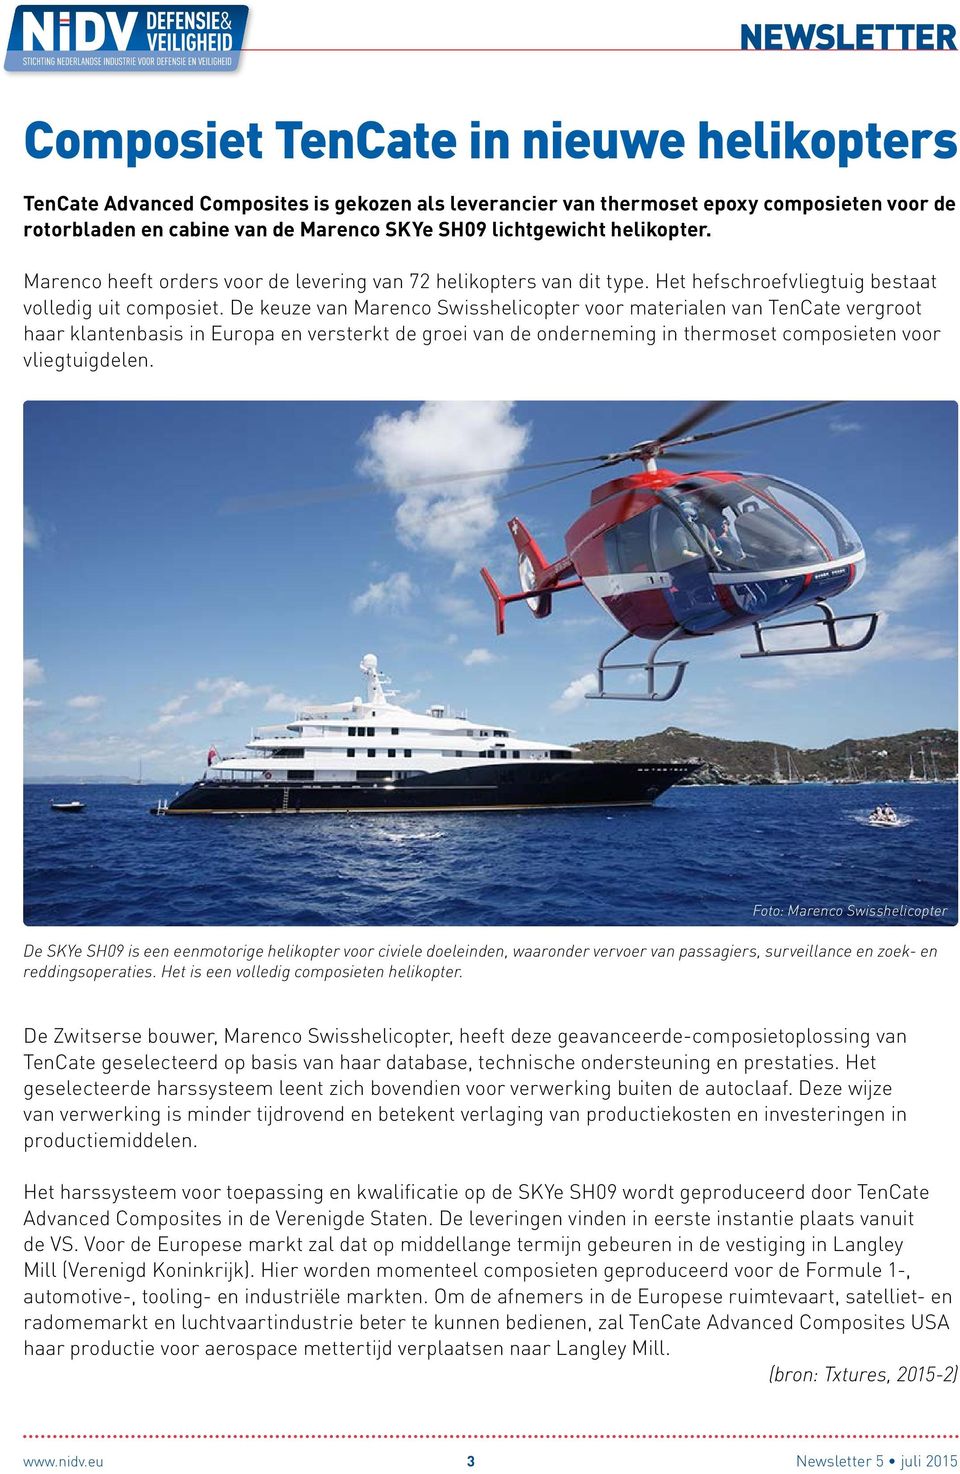 De keuze van Marenco Swisshelicopter voor materialen van TenCate vergroot haar klantenbasis in Europa en versterkt de groei van de onderneming in thermoset composieten voor vliegtuigdelen.